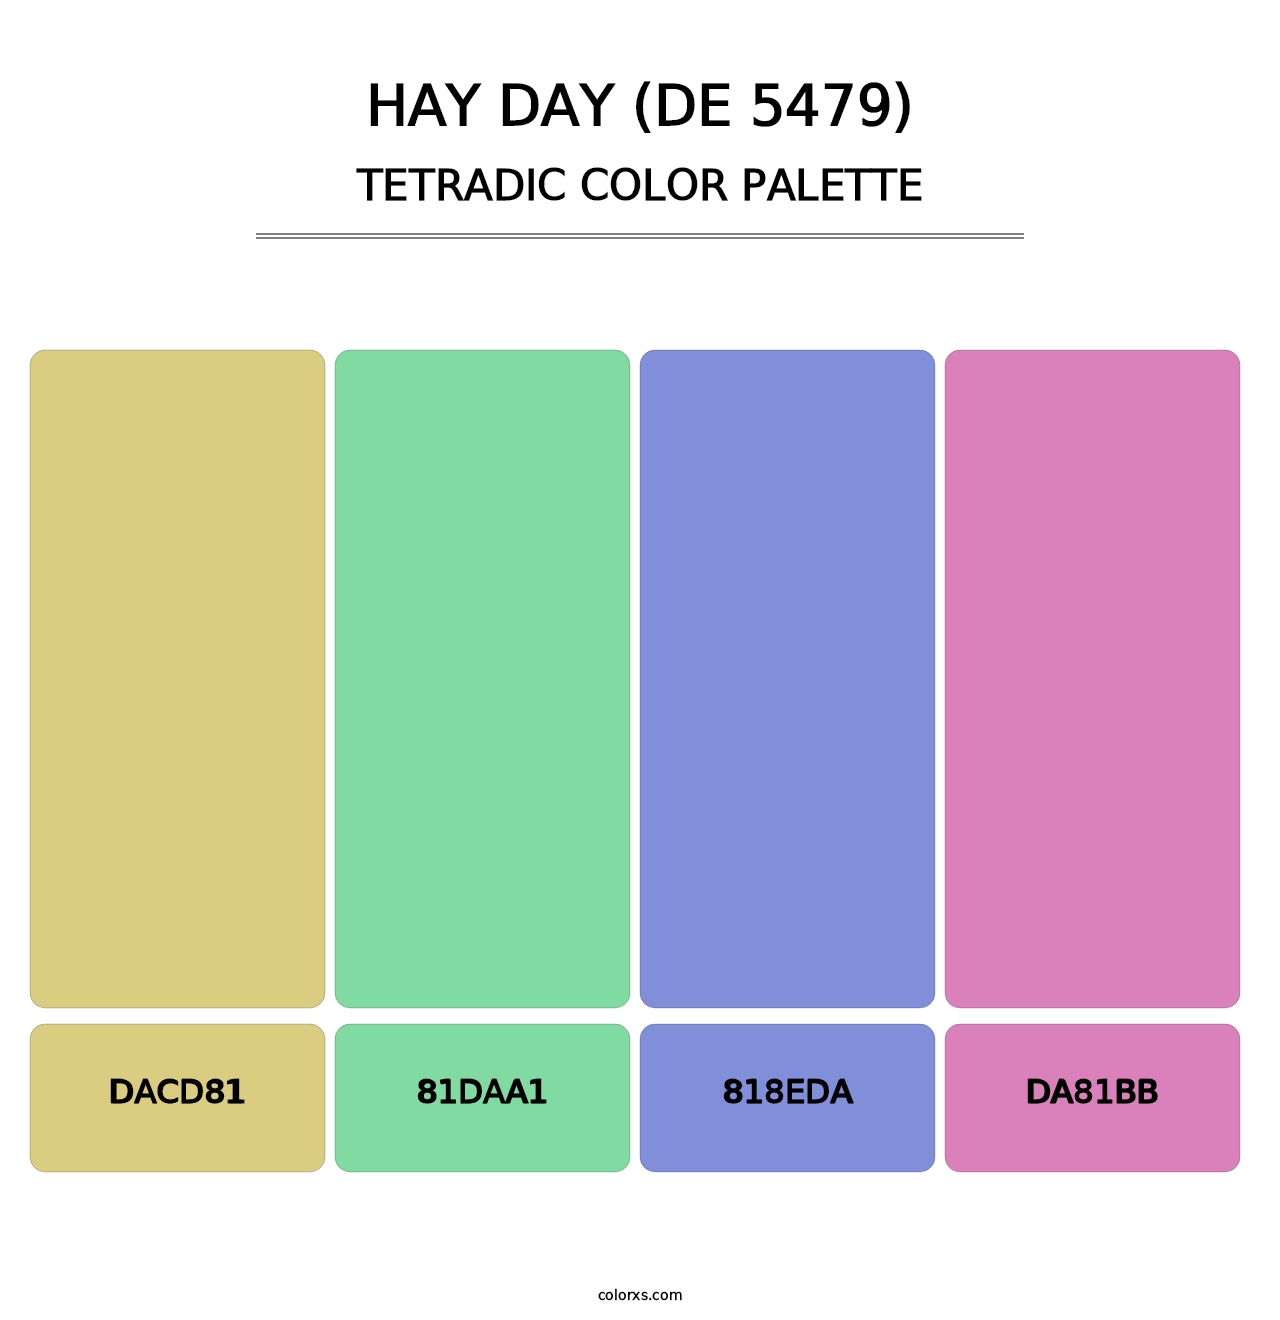 Hay Day (DE 5479) - Tetradic Color Palette